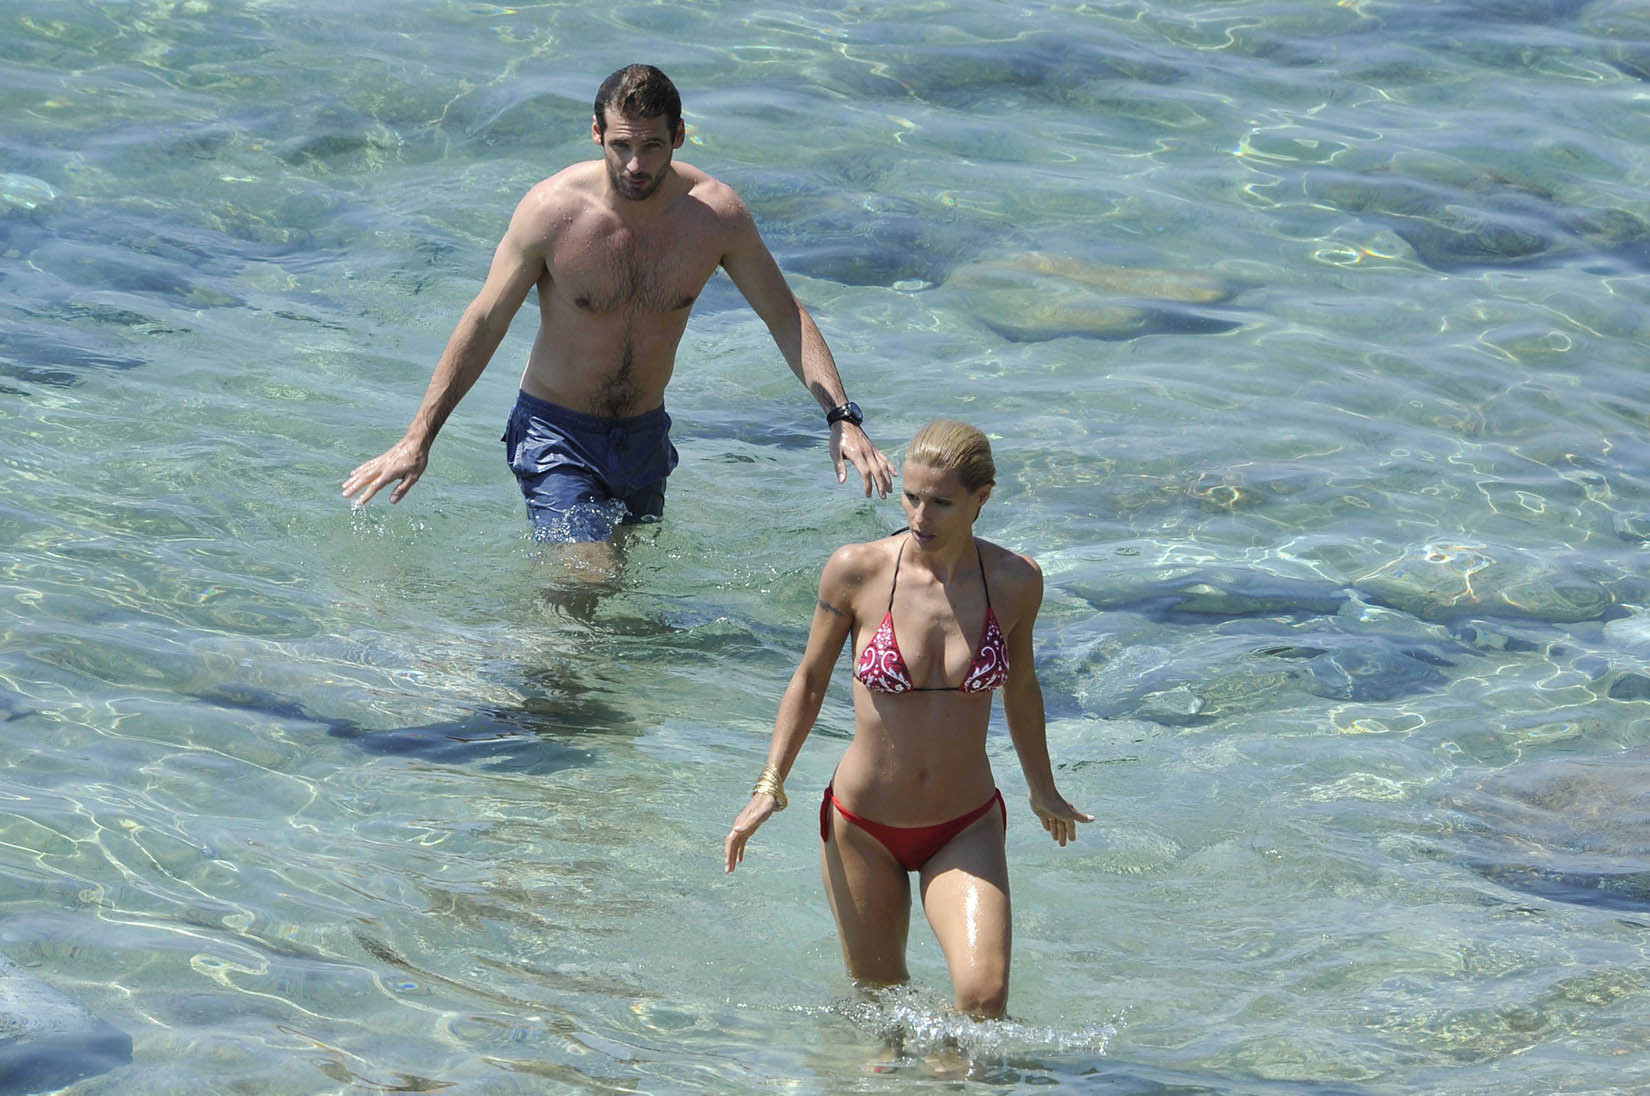 Michelle hunziker tetona con un bikini escaso en la playa de miami
 #75259539